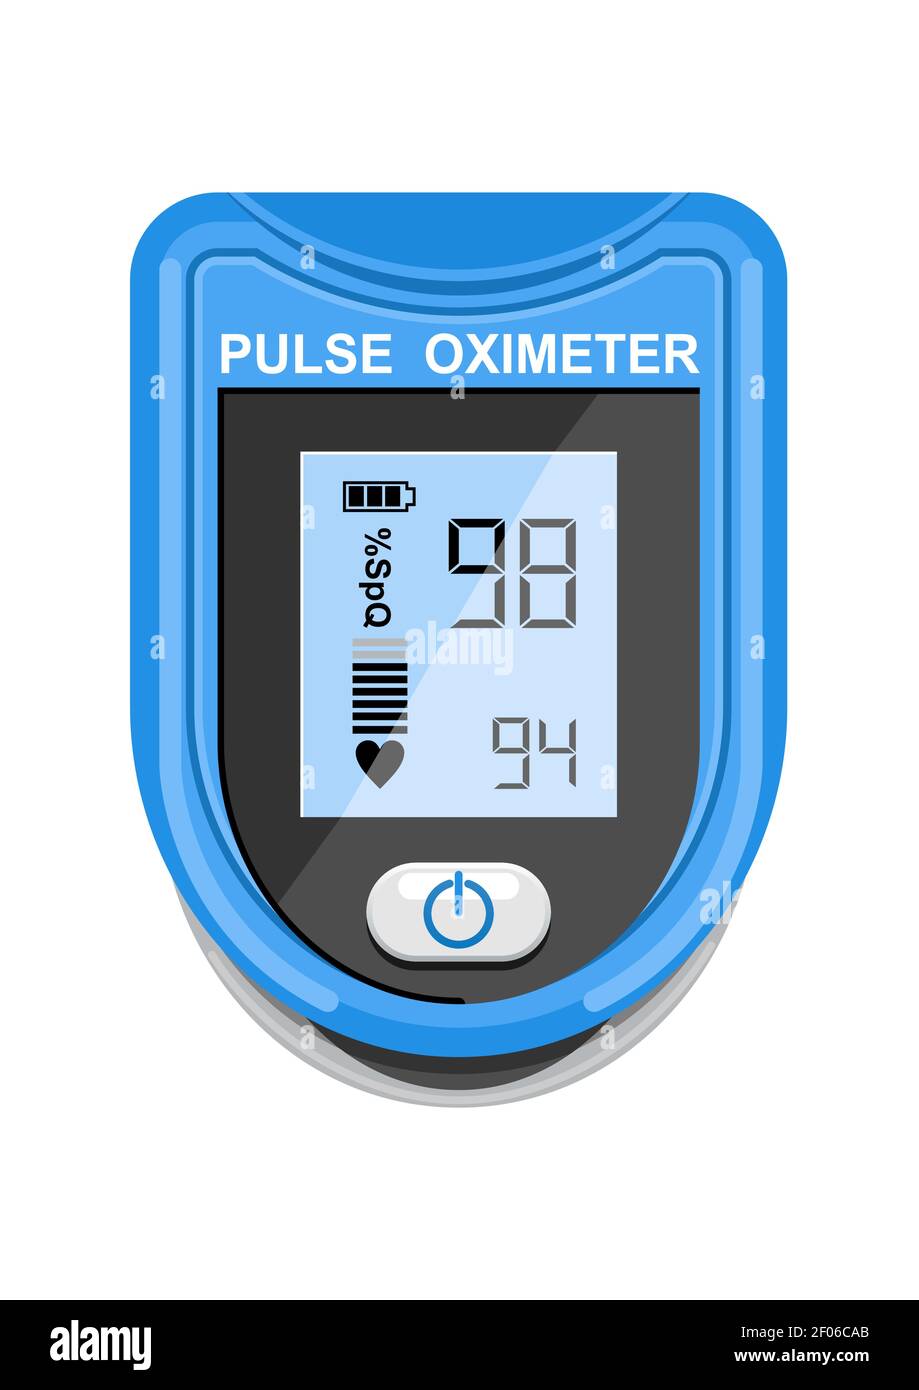 Pulsoximeter-Symbol auf dem Medianfinger zur Messung des Sauerstoffs im Blut. Gesundheitsfürsorge für Blutsättigungstest. Vektorgrafik Stock Vektor